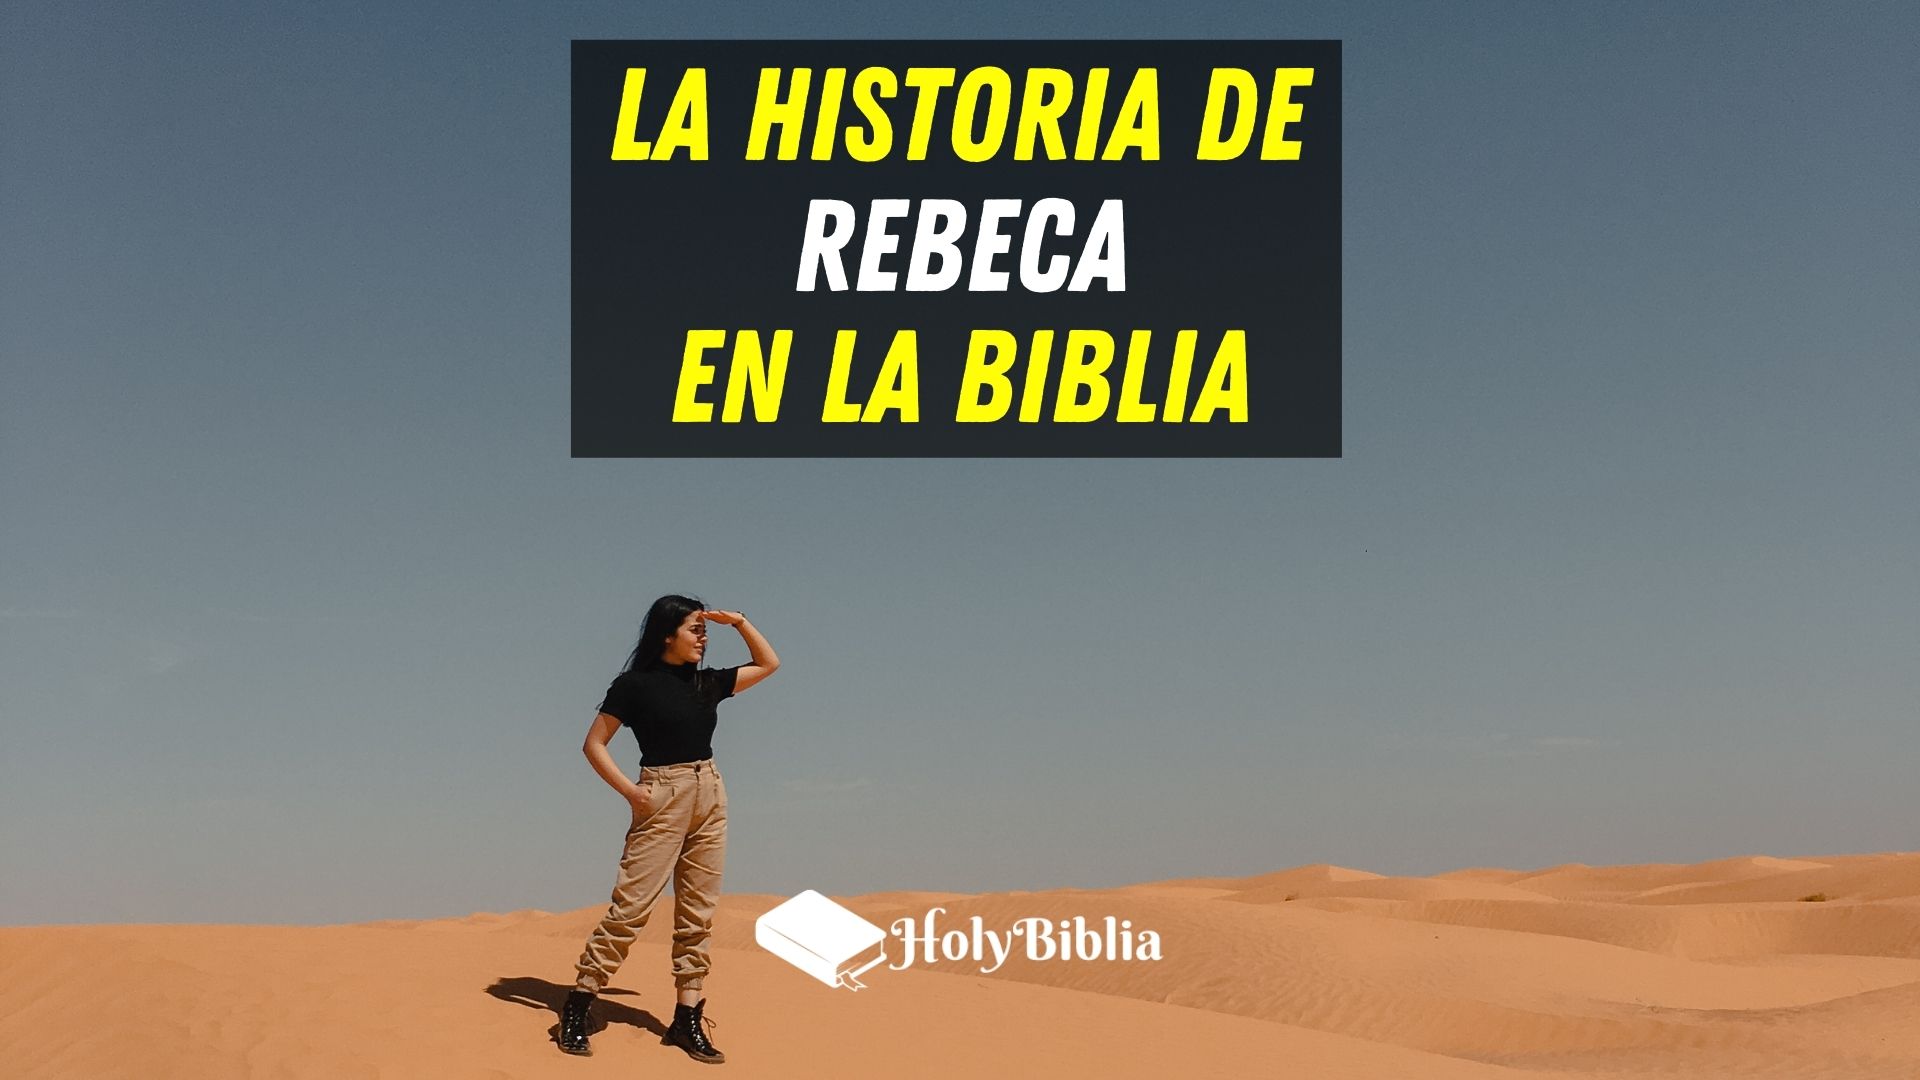 ᐅ ✔ ¿Quién era Rebeca en la Biblia? |